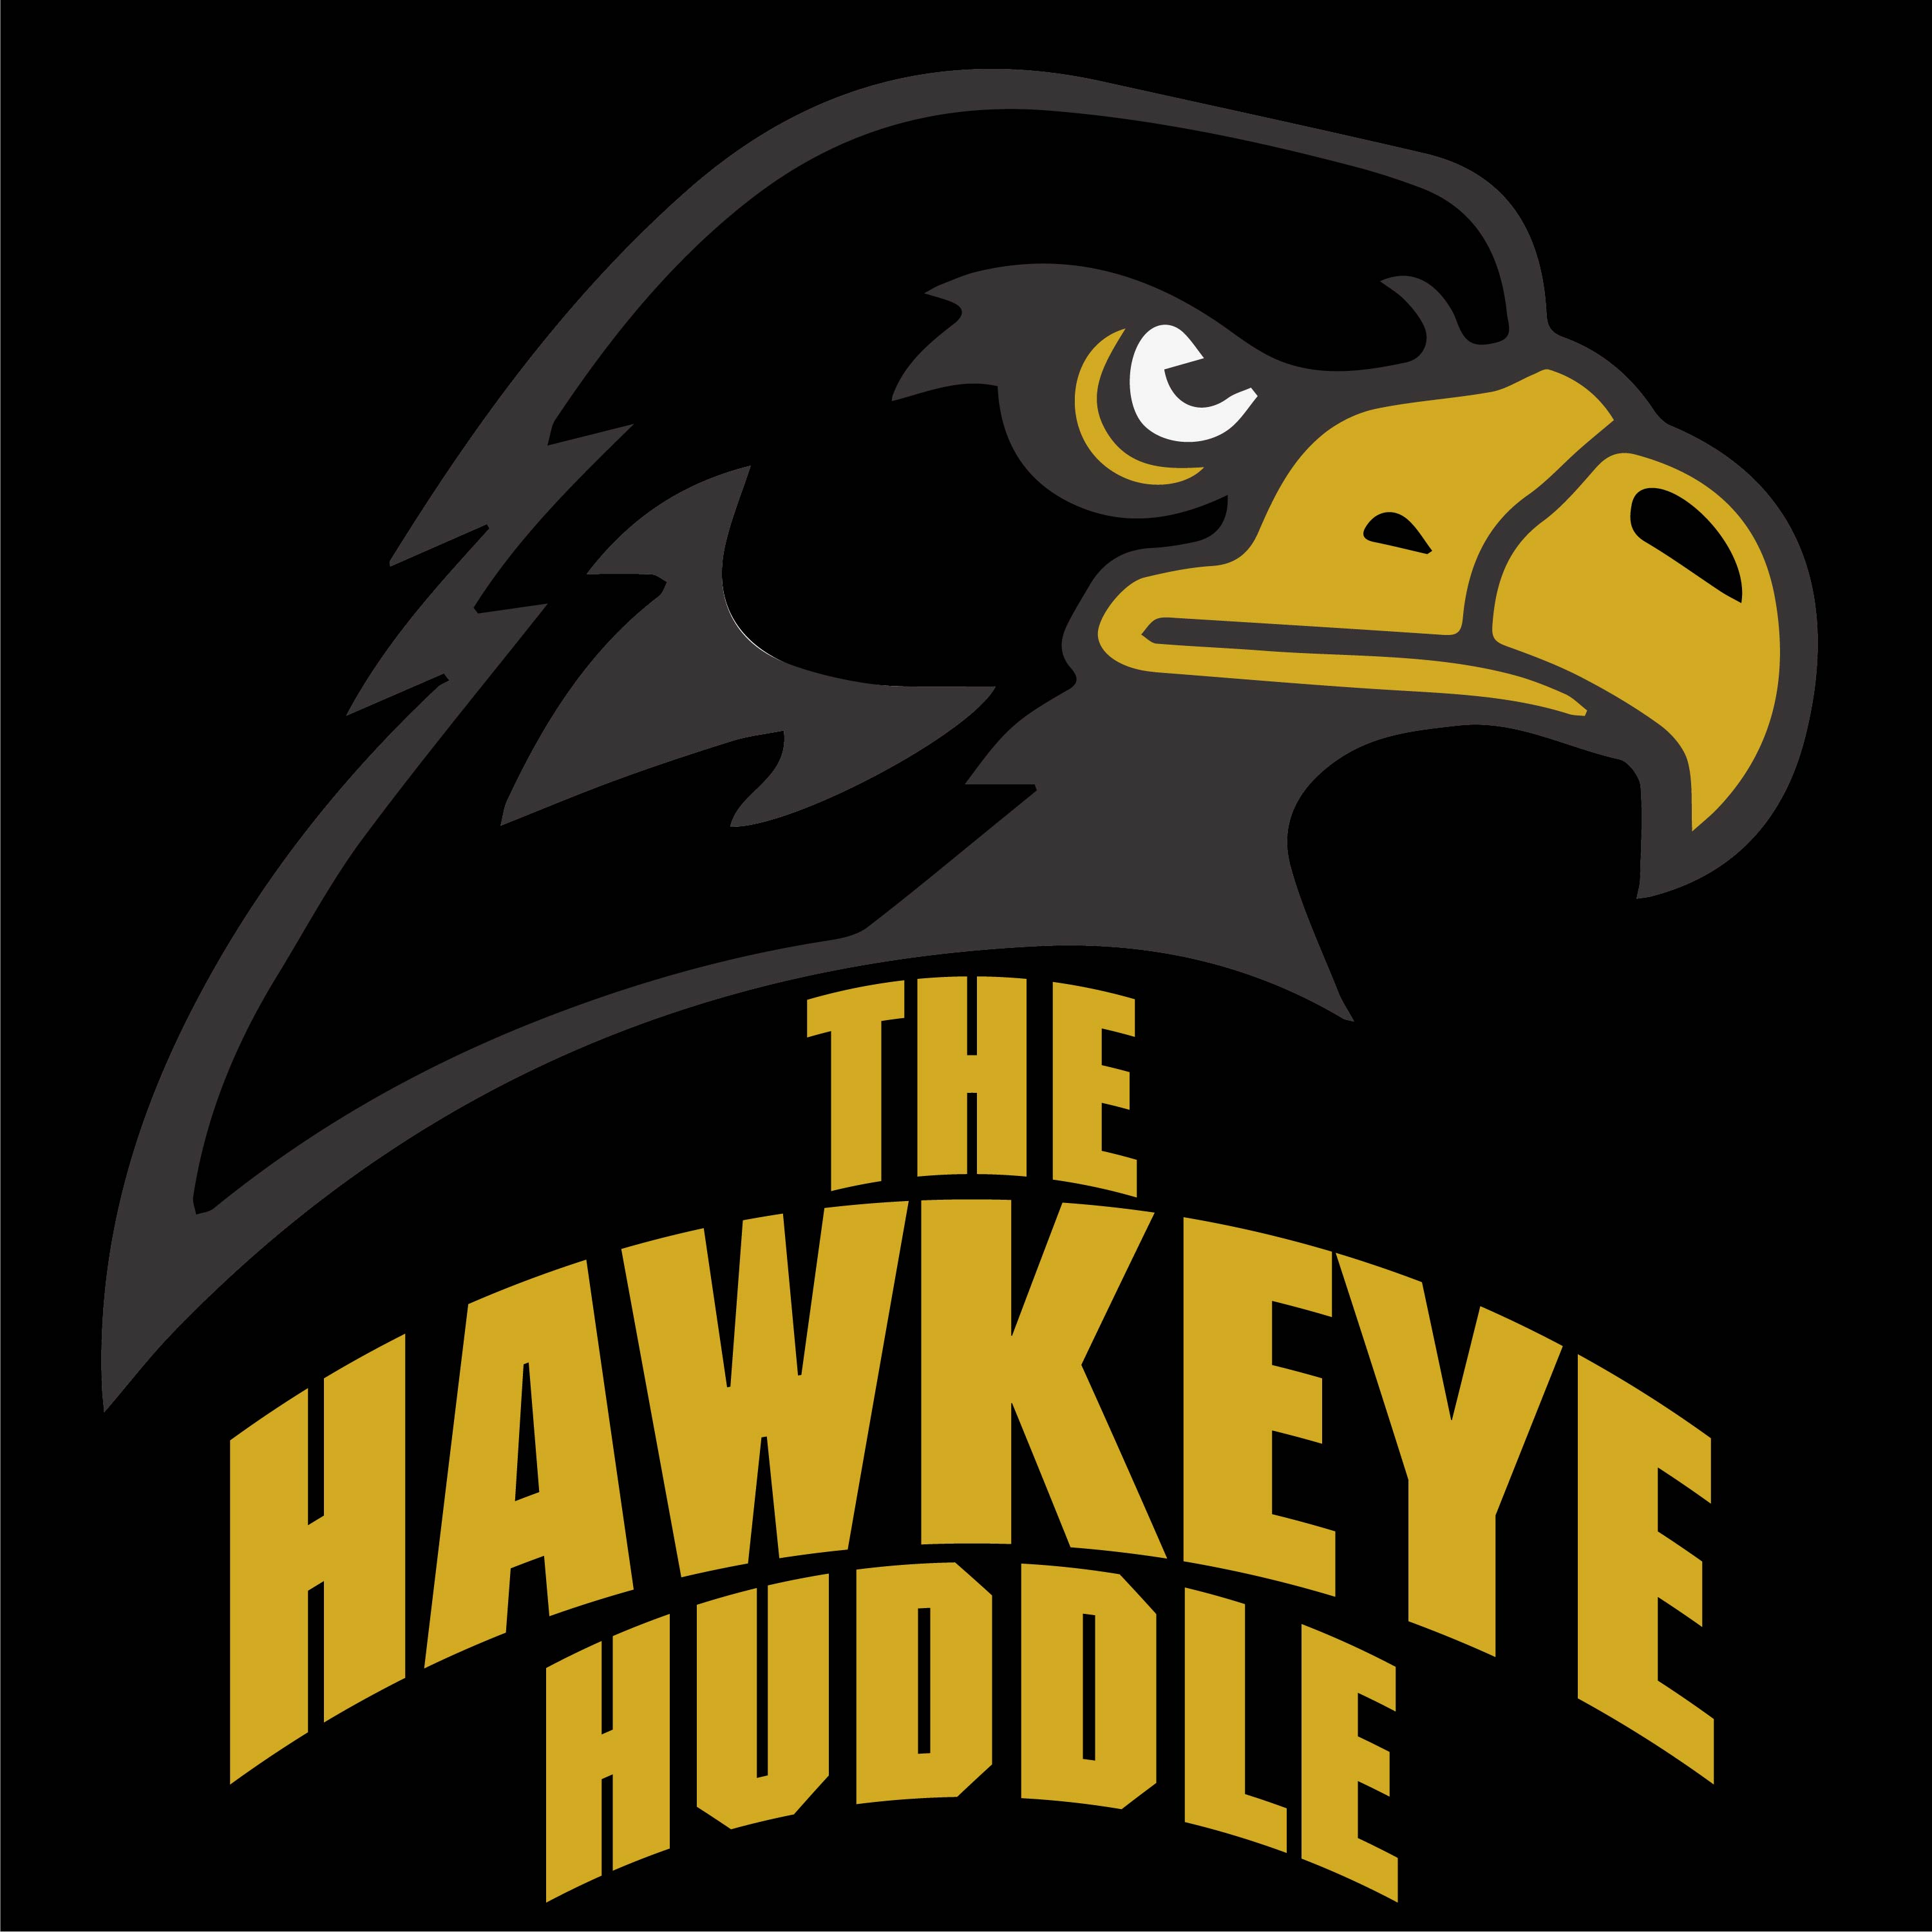 The Hawkeye Huddle